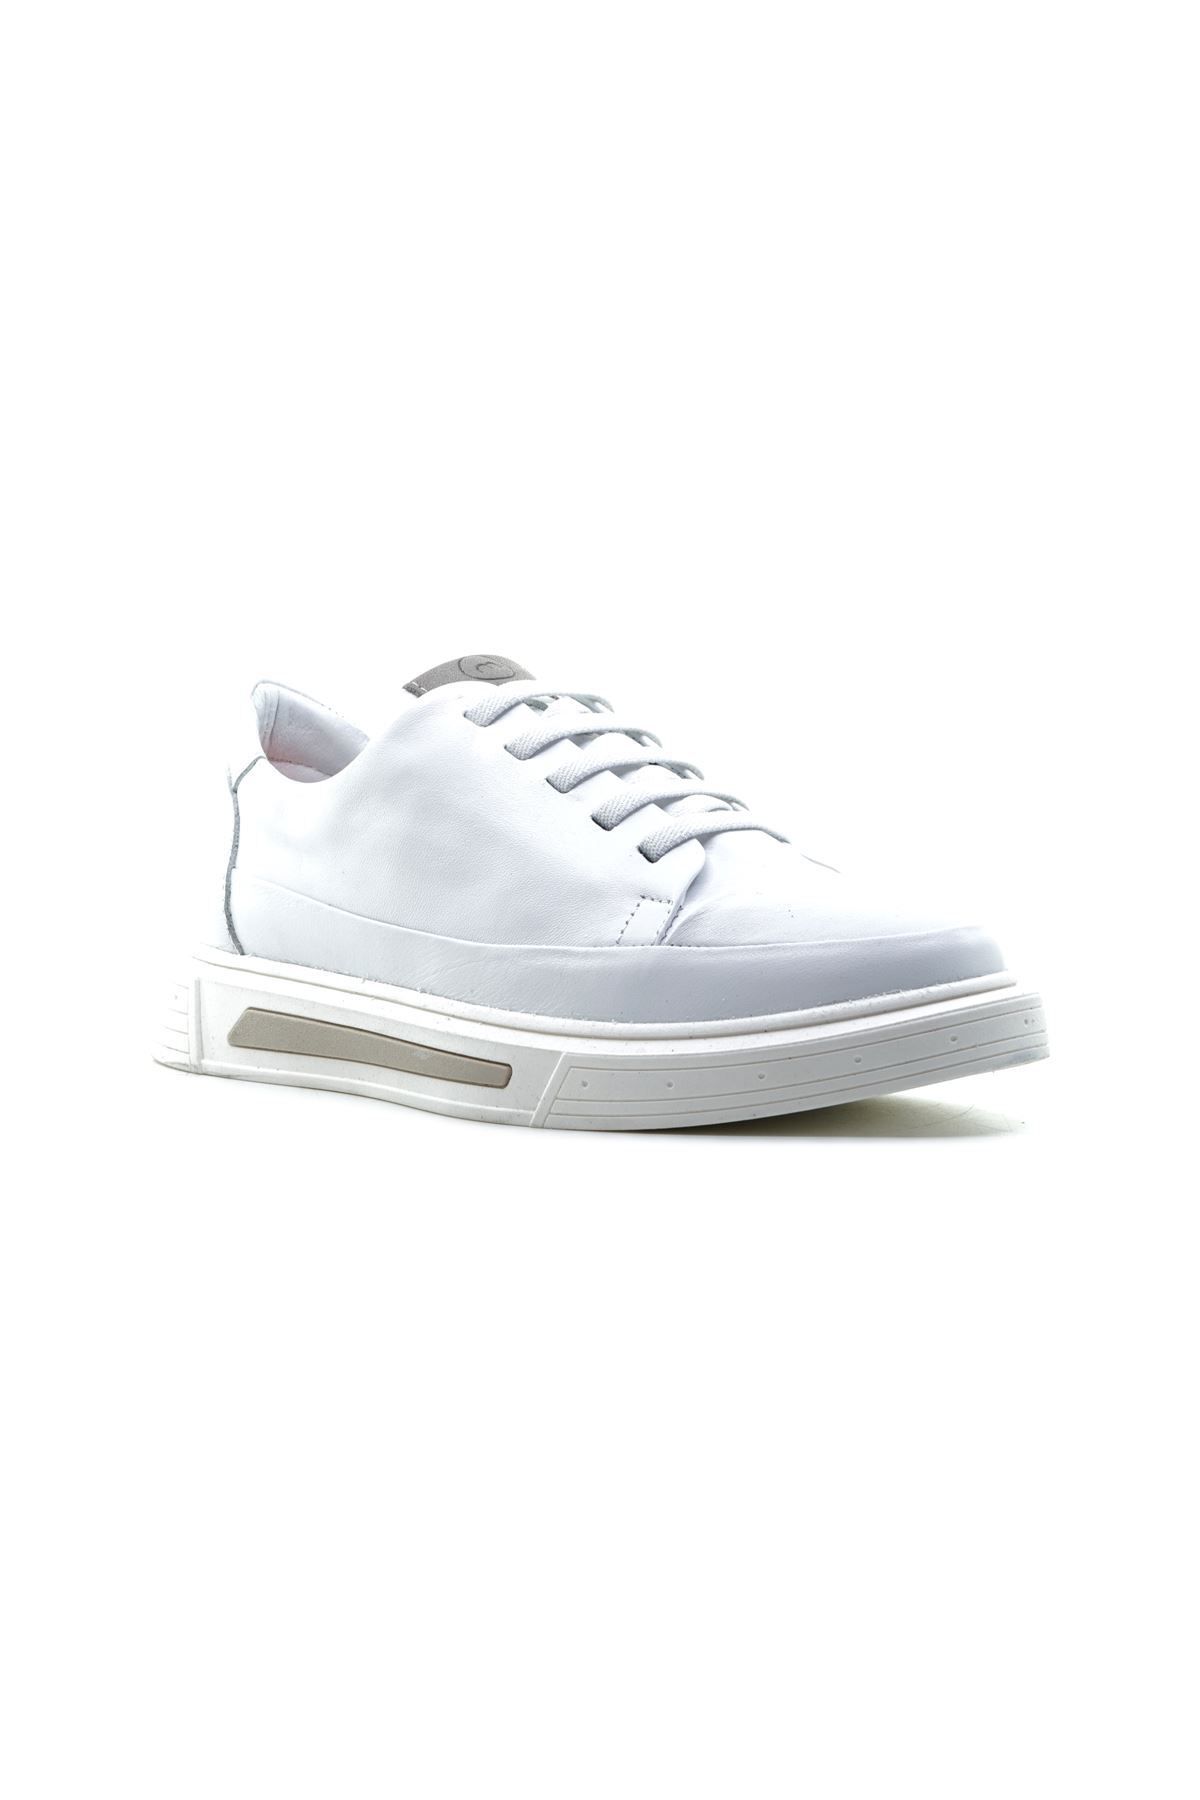 Mammamia 3950 Beyaz Hakiki Deri Kadın Sneaker Spor Ayakkabı